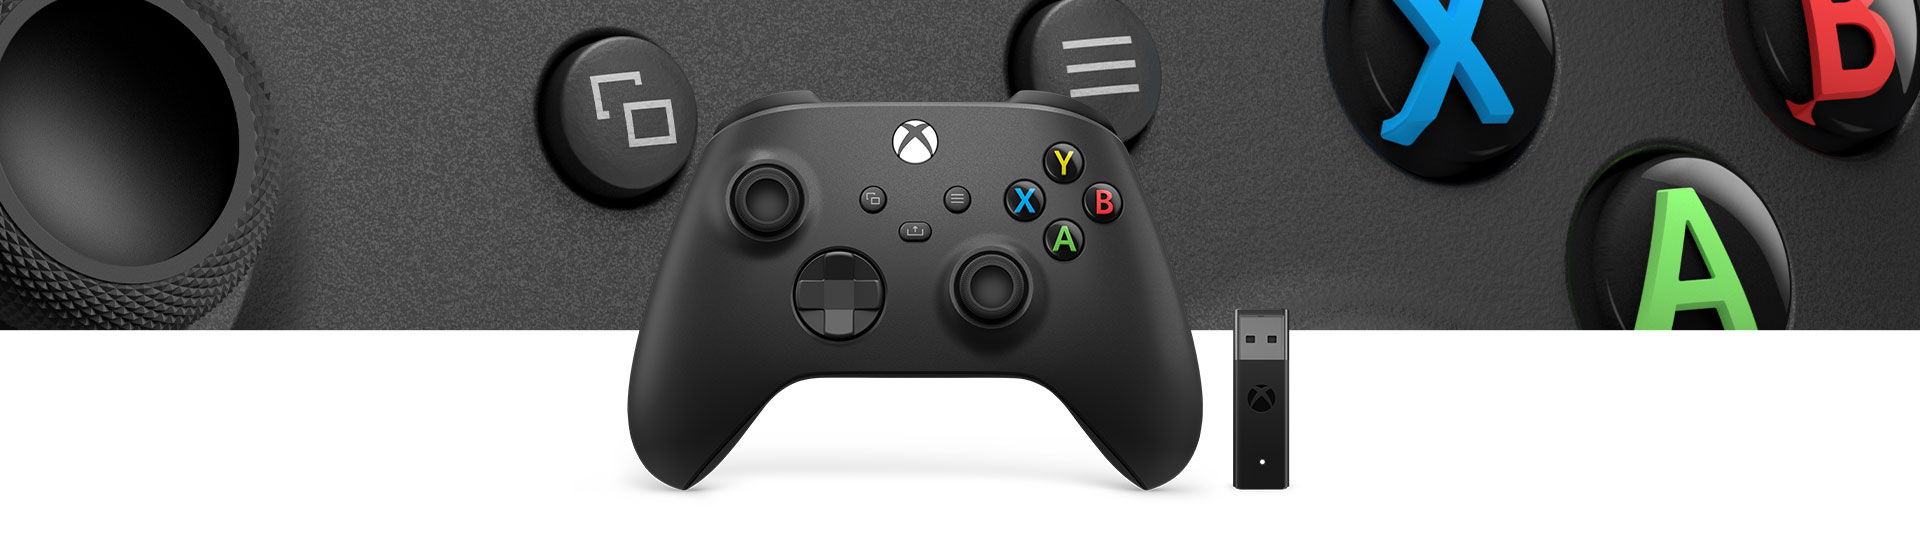 Xbox draadloze controller + draadloze adapter voor Windows 10 met een close-up van het structuuroppervlak van de controller